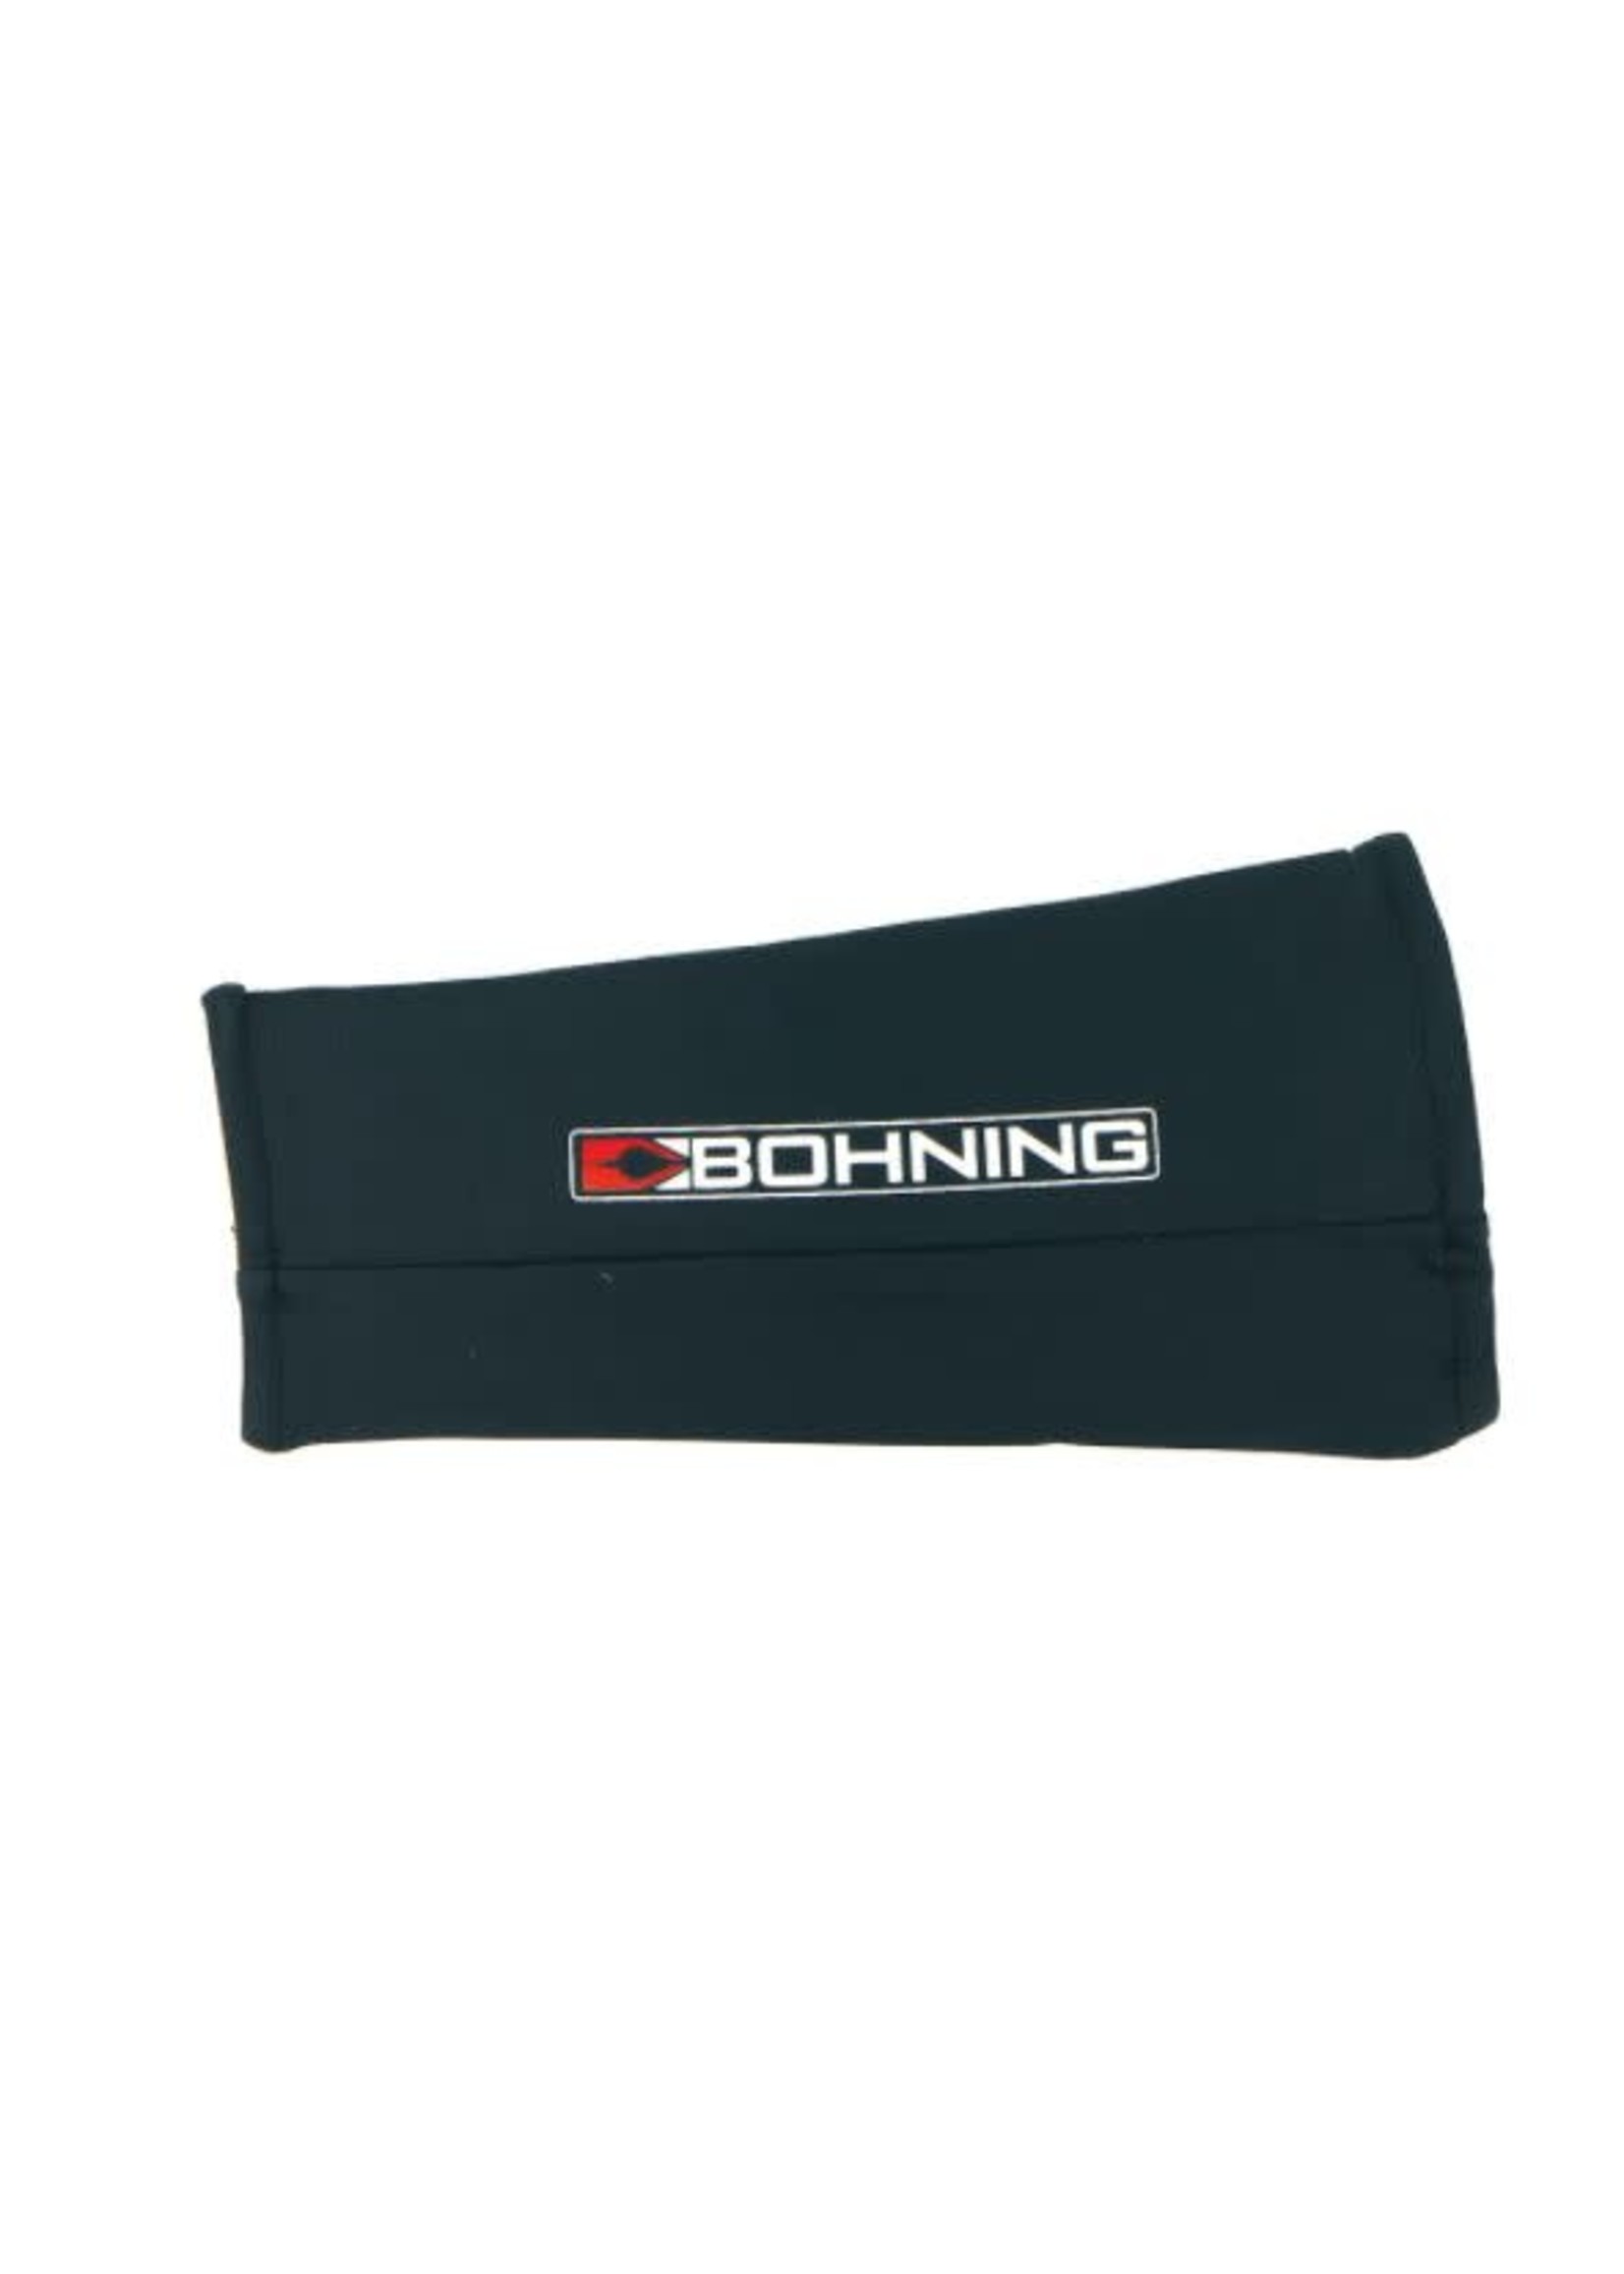 Bohning Slip-On Armguard - Medium Black